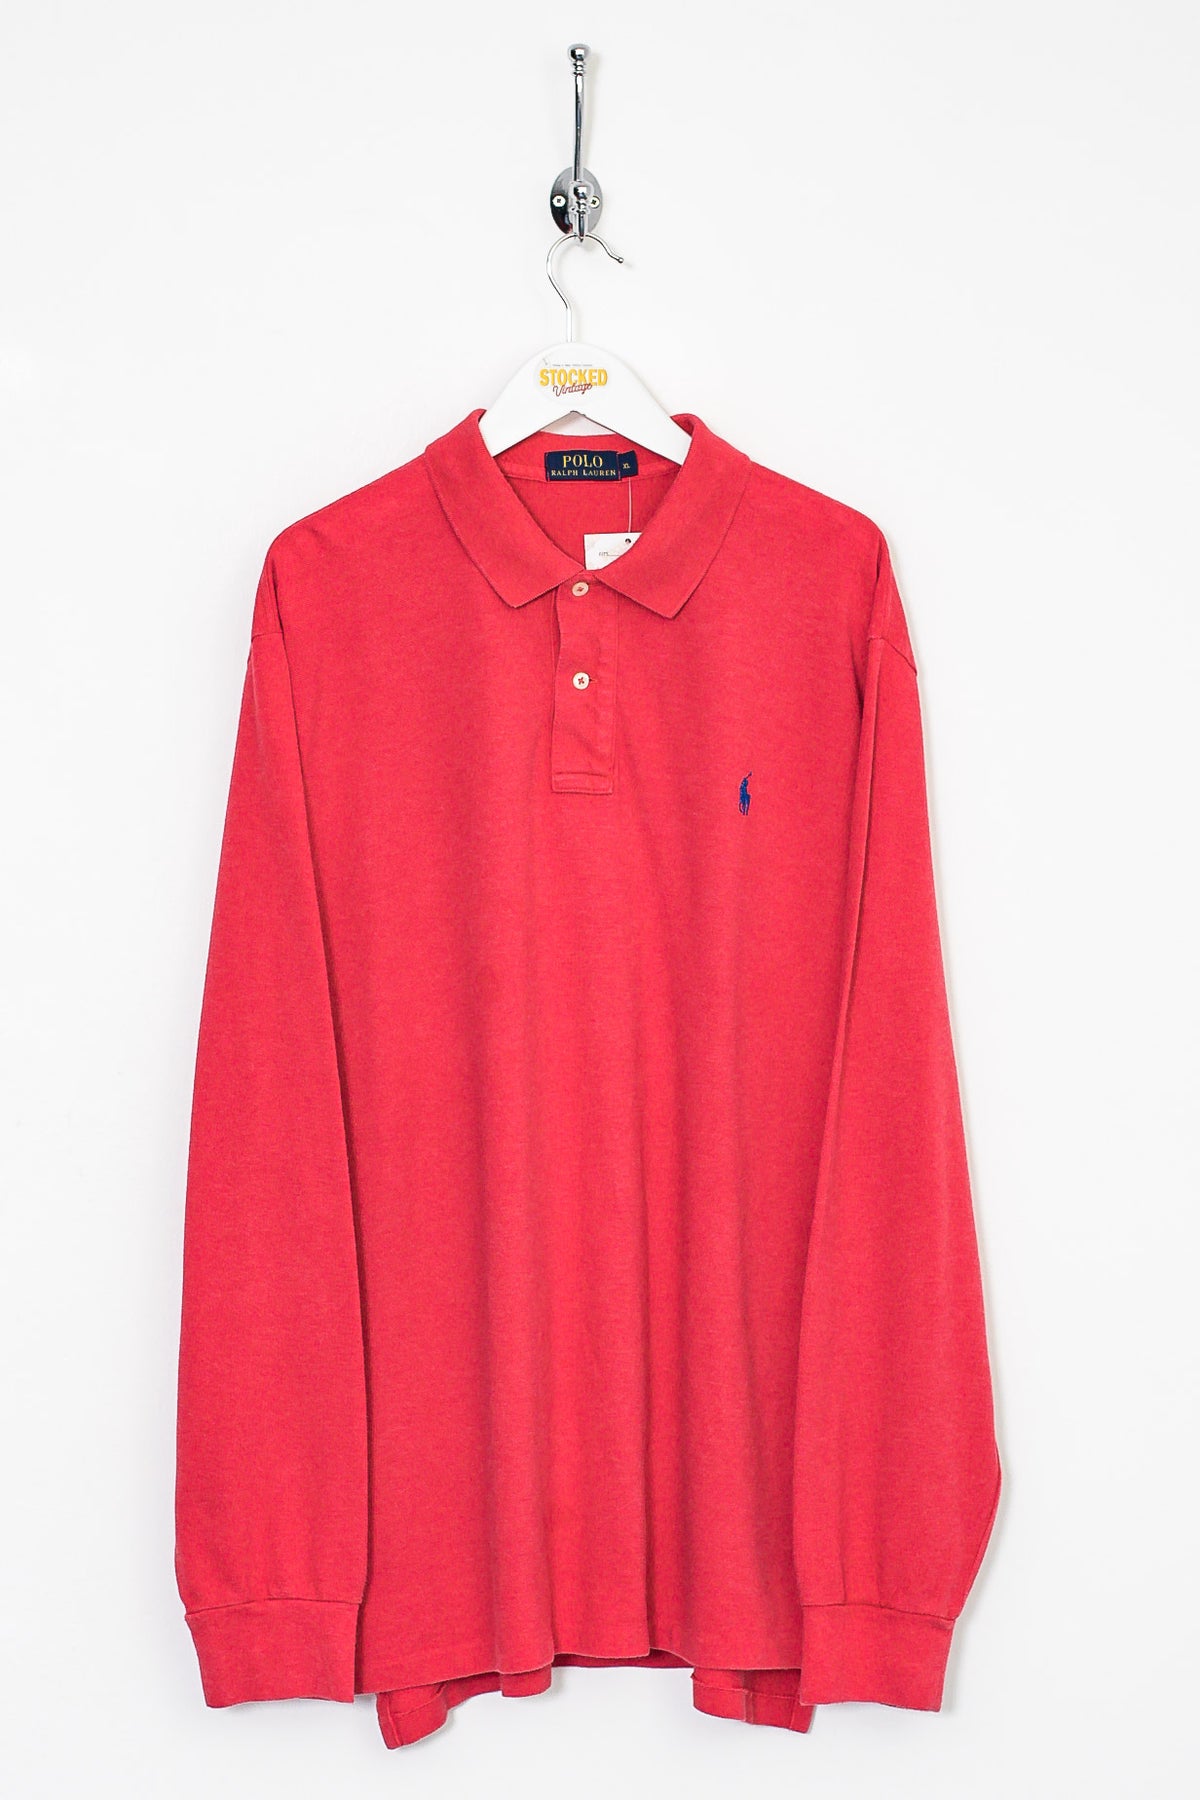 Ralph Lauren Long Sleeve Polo Shirt (XL)